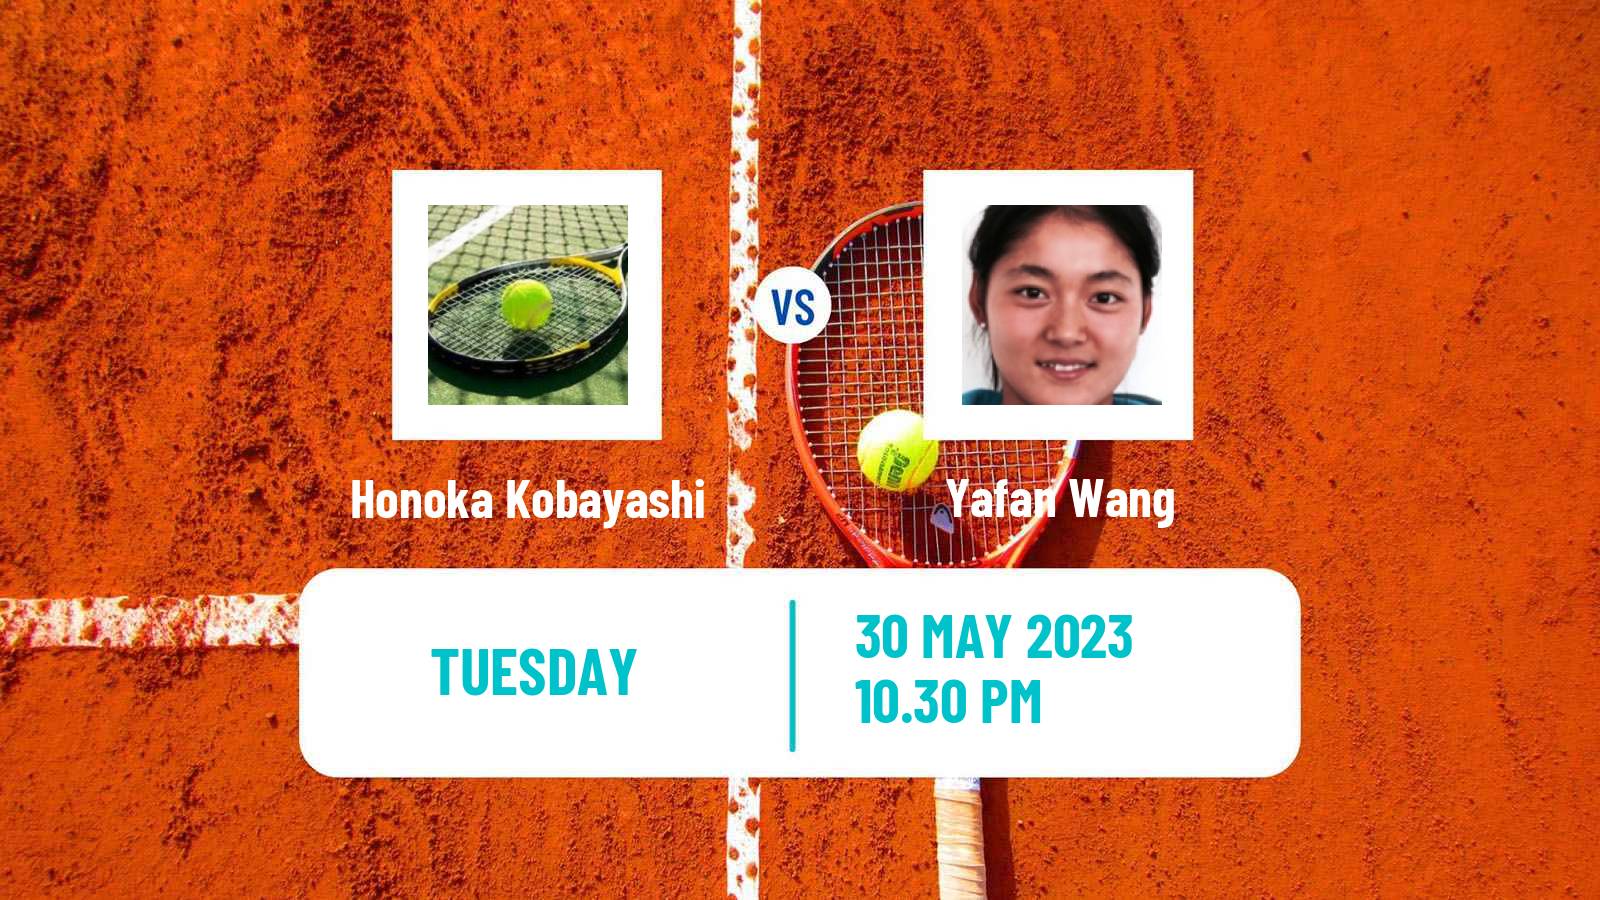 Tennis ITF W25 Tokyo Women Honoka Kobayashi - Yafan Wang